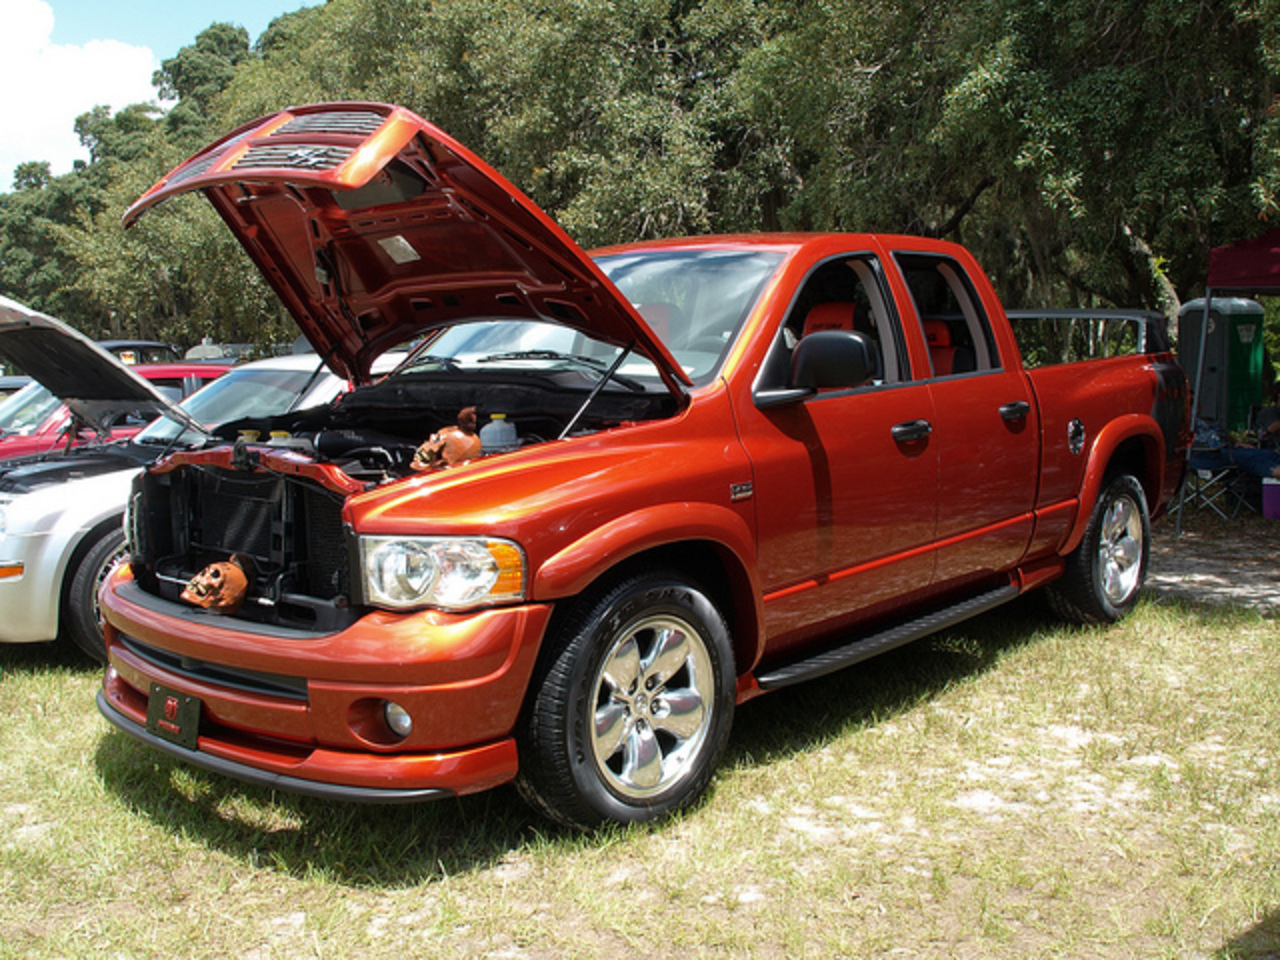 2006 Dodge Ram Daytona R/T | Flickr - Photo Sharing!